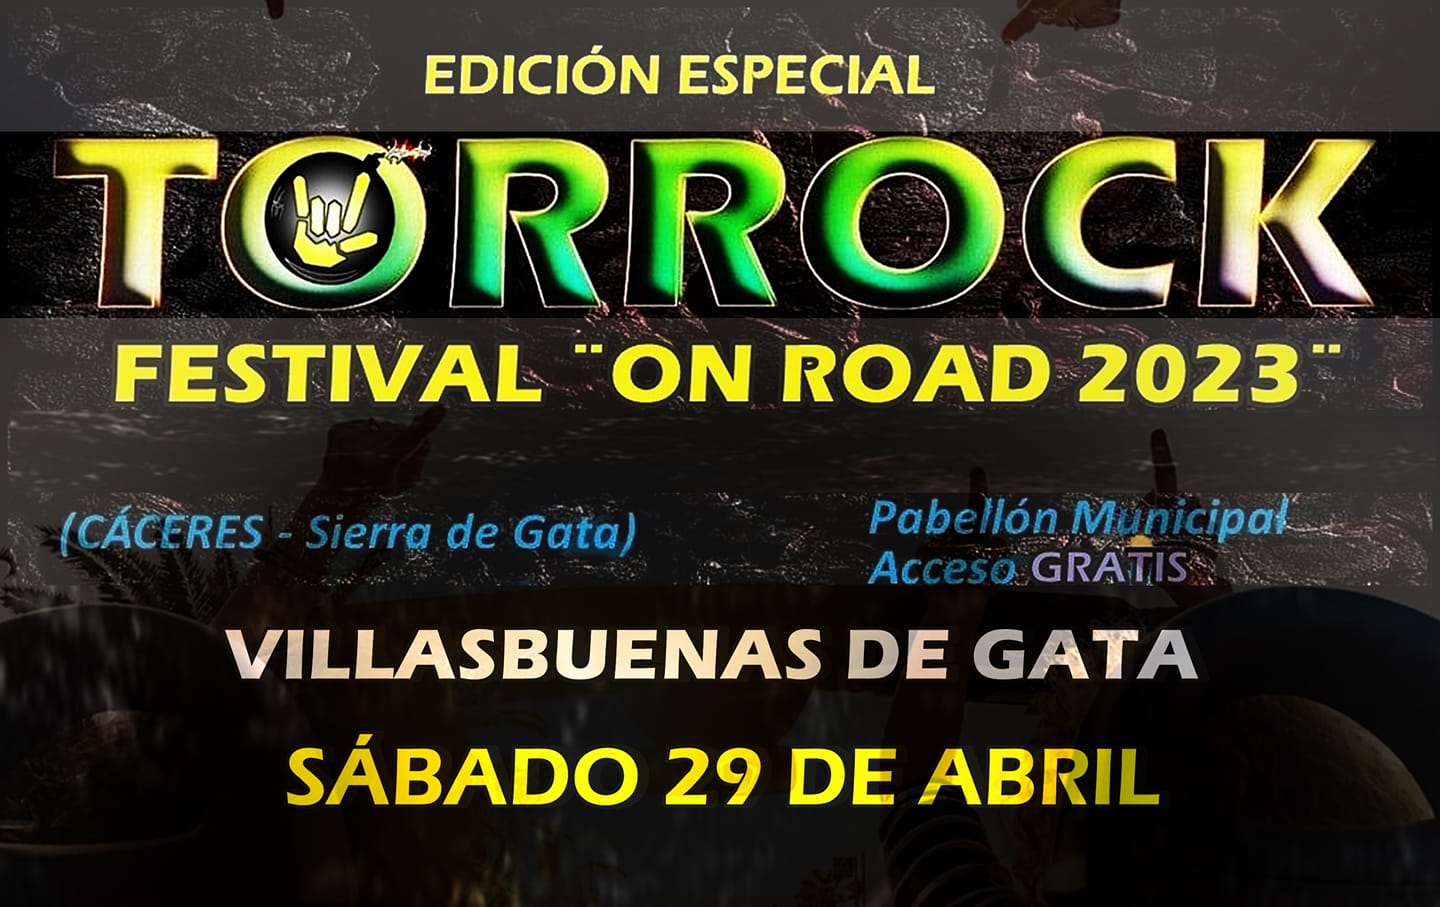 Torrock Festival On Road